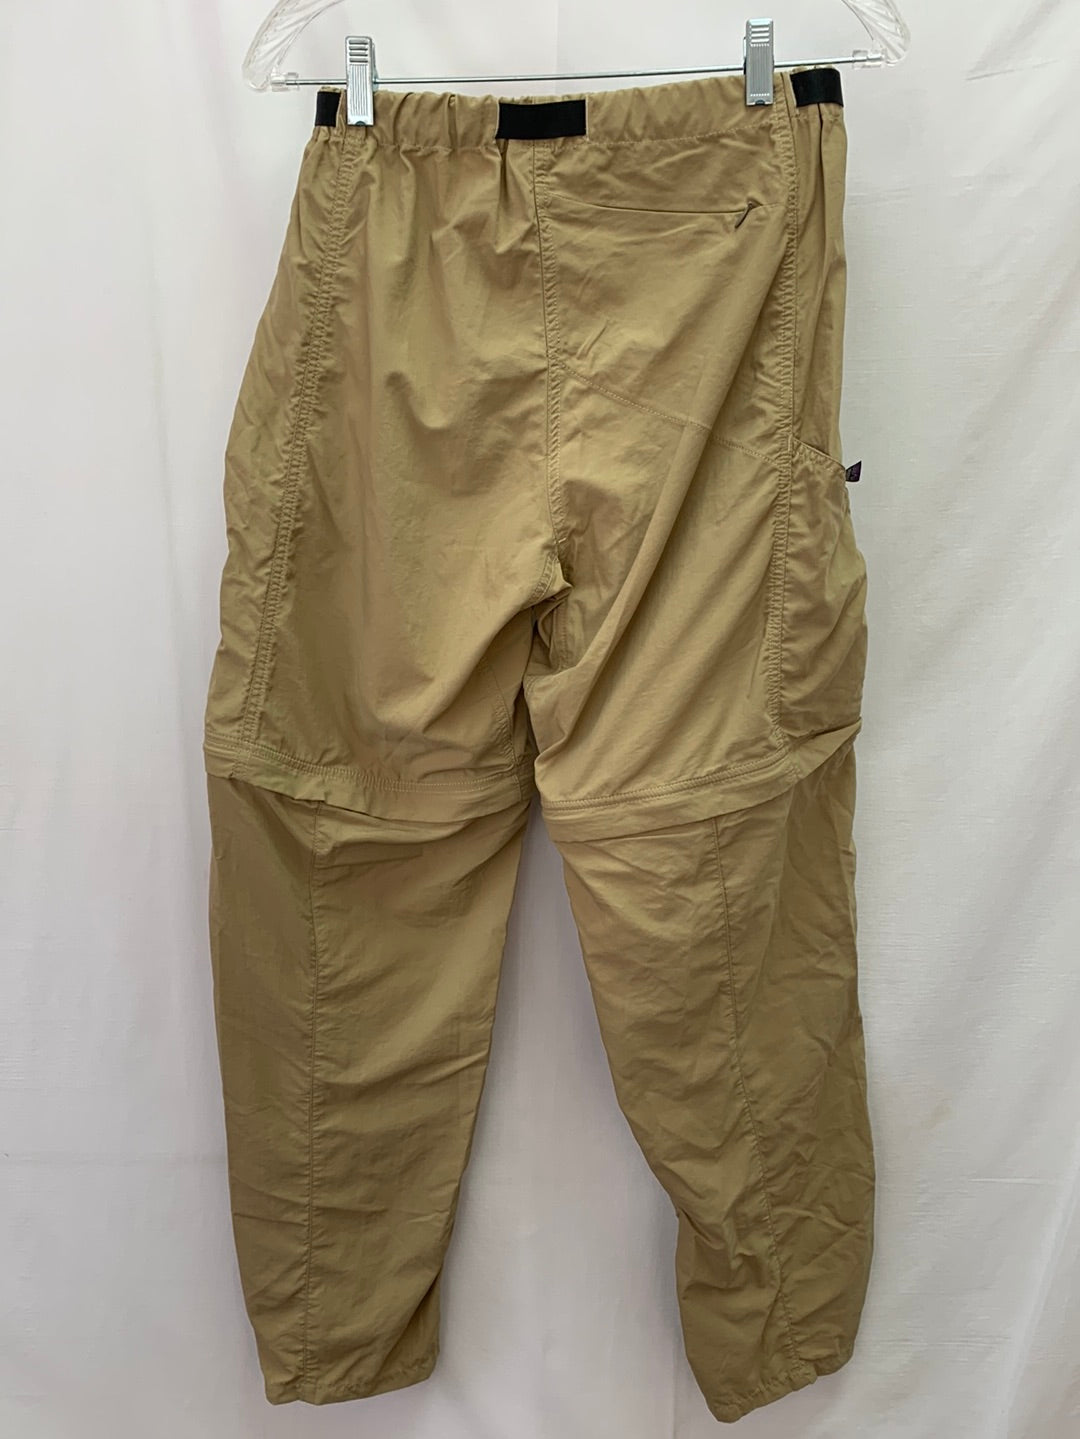 PATAGONIA dark khaki Men's Belted Convertible Nylon Hiking Pants - S